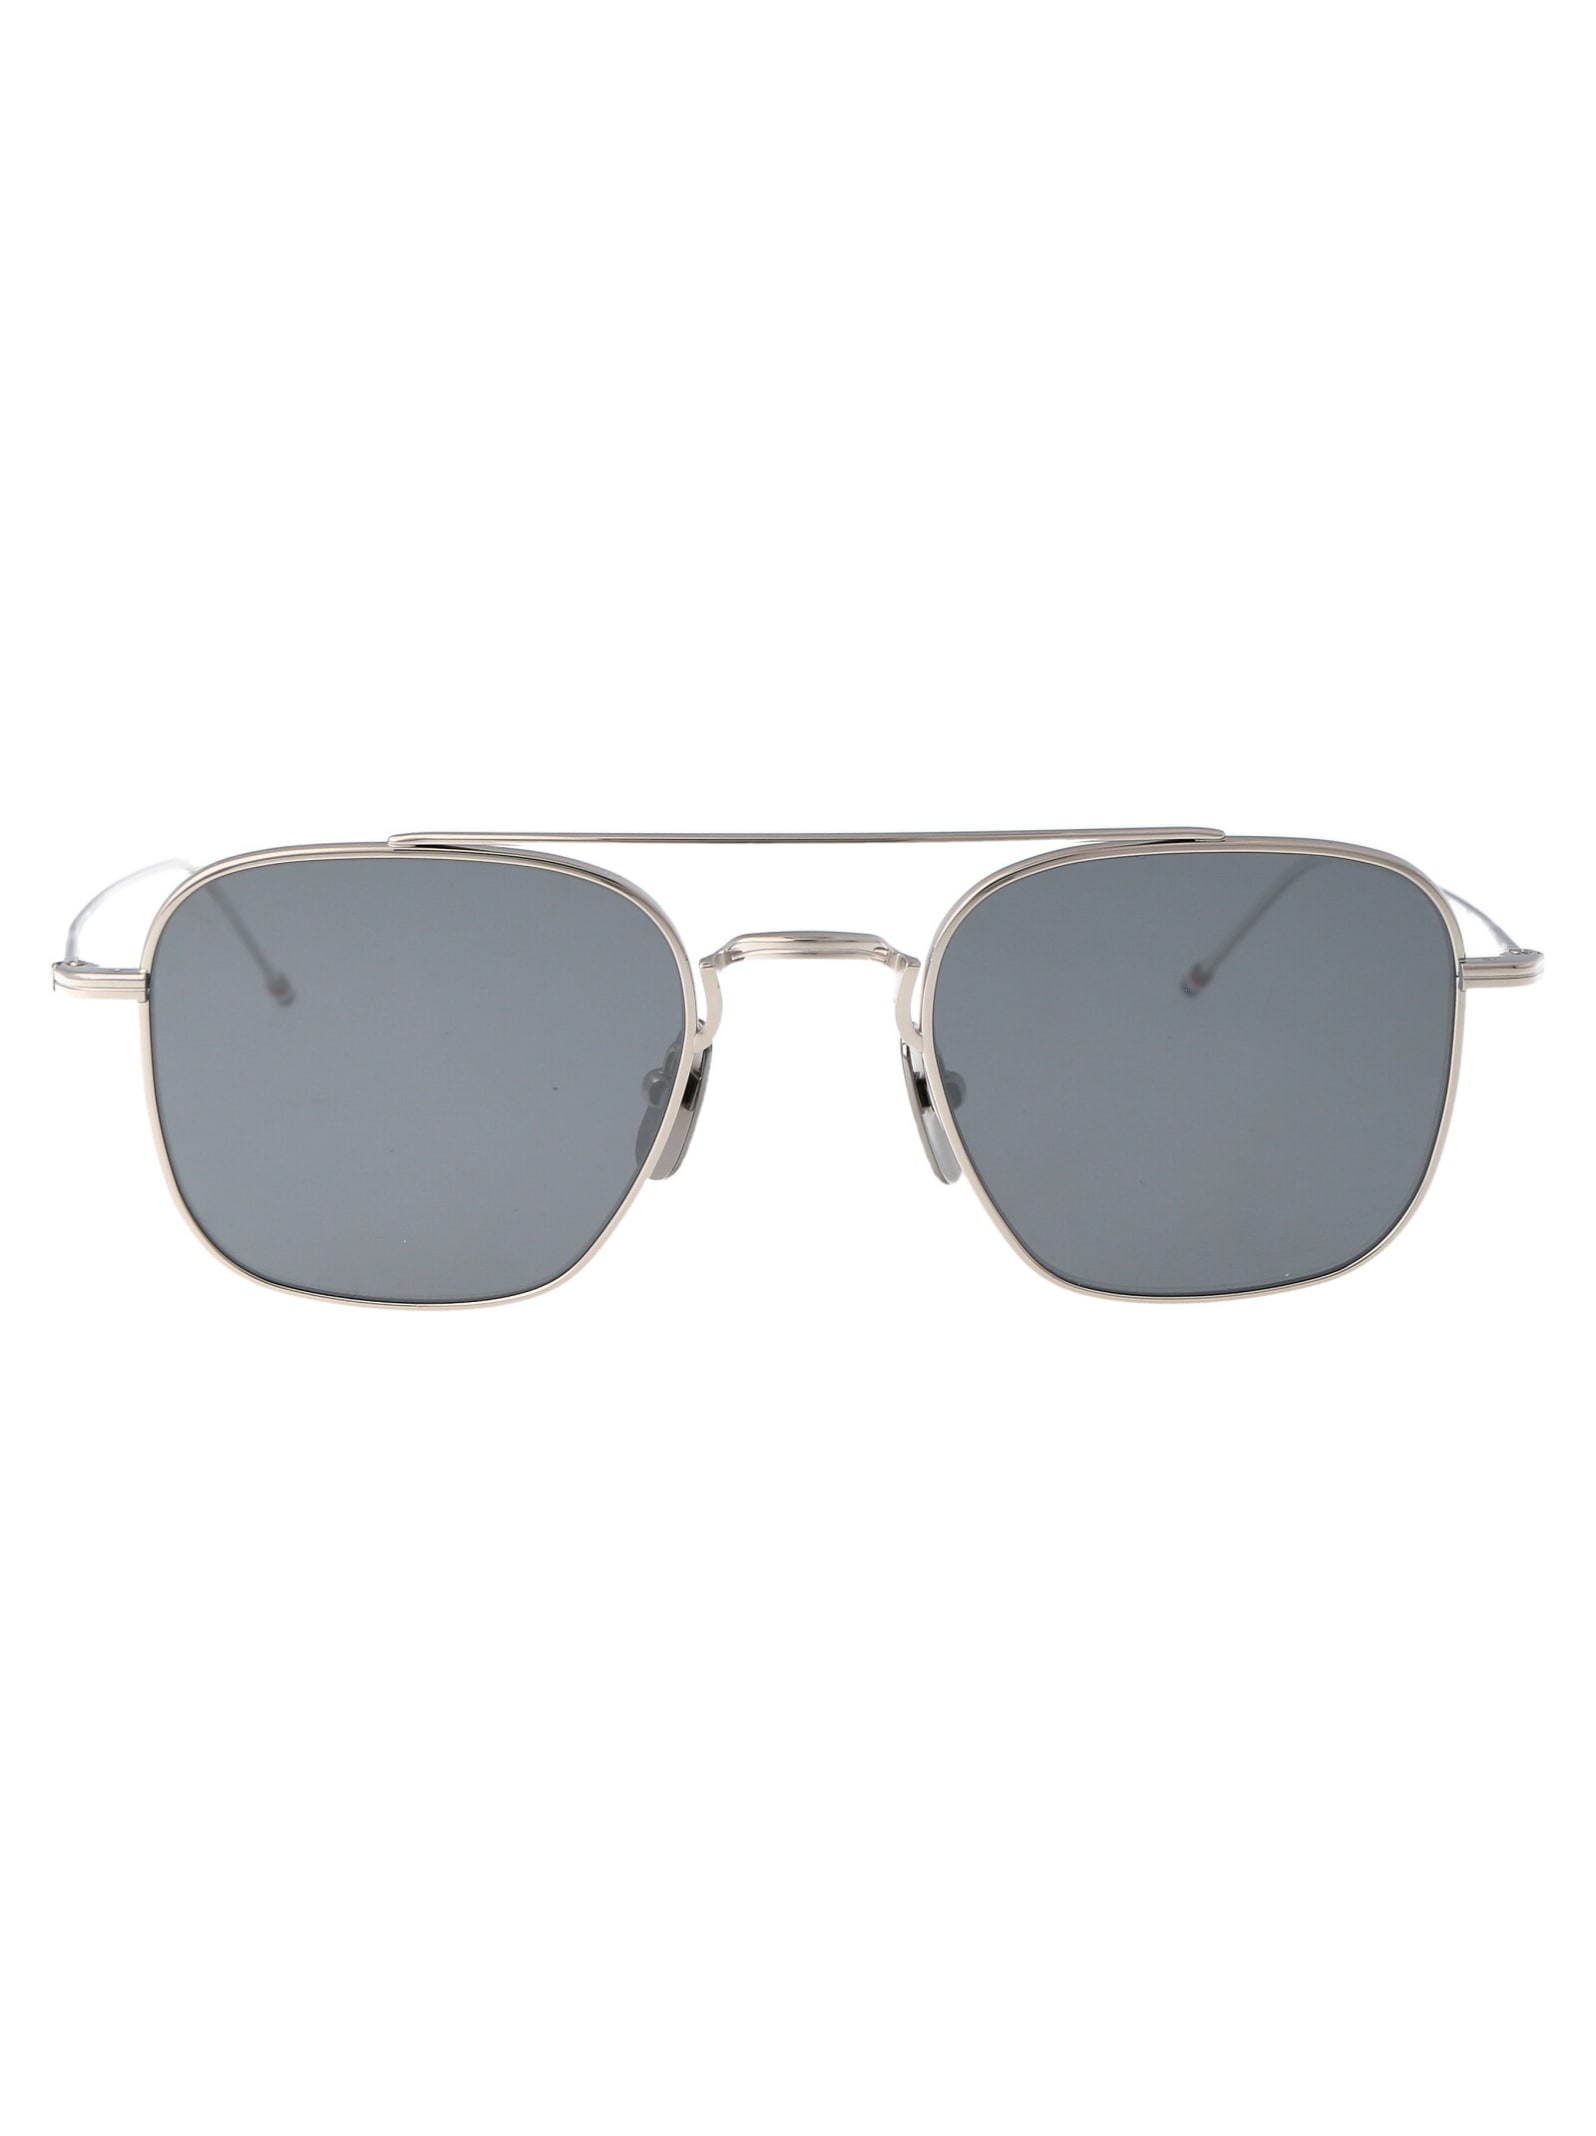 Ues907a-g0001-045-50 Sunglasses